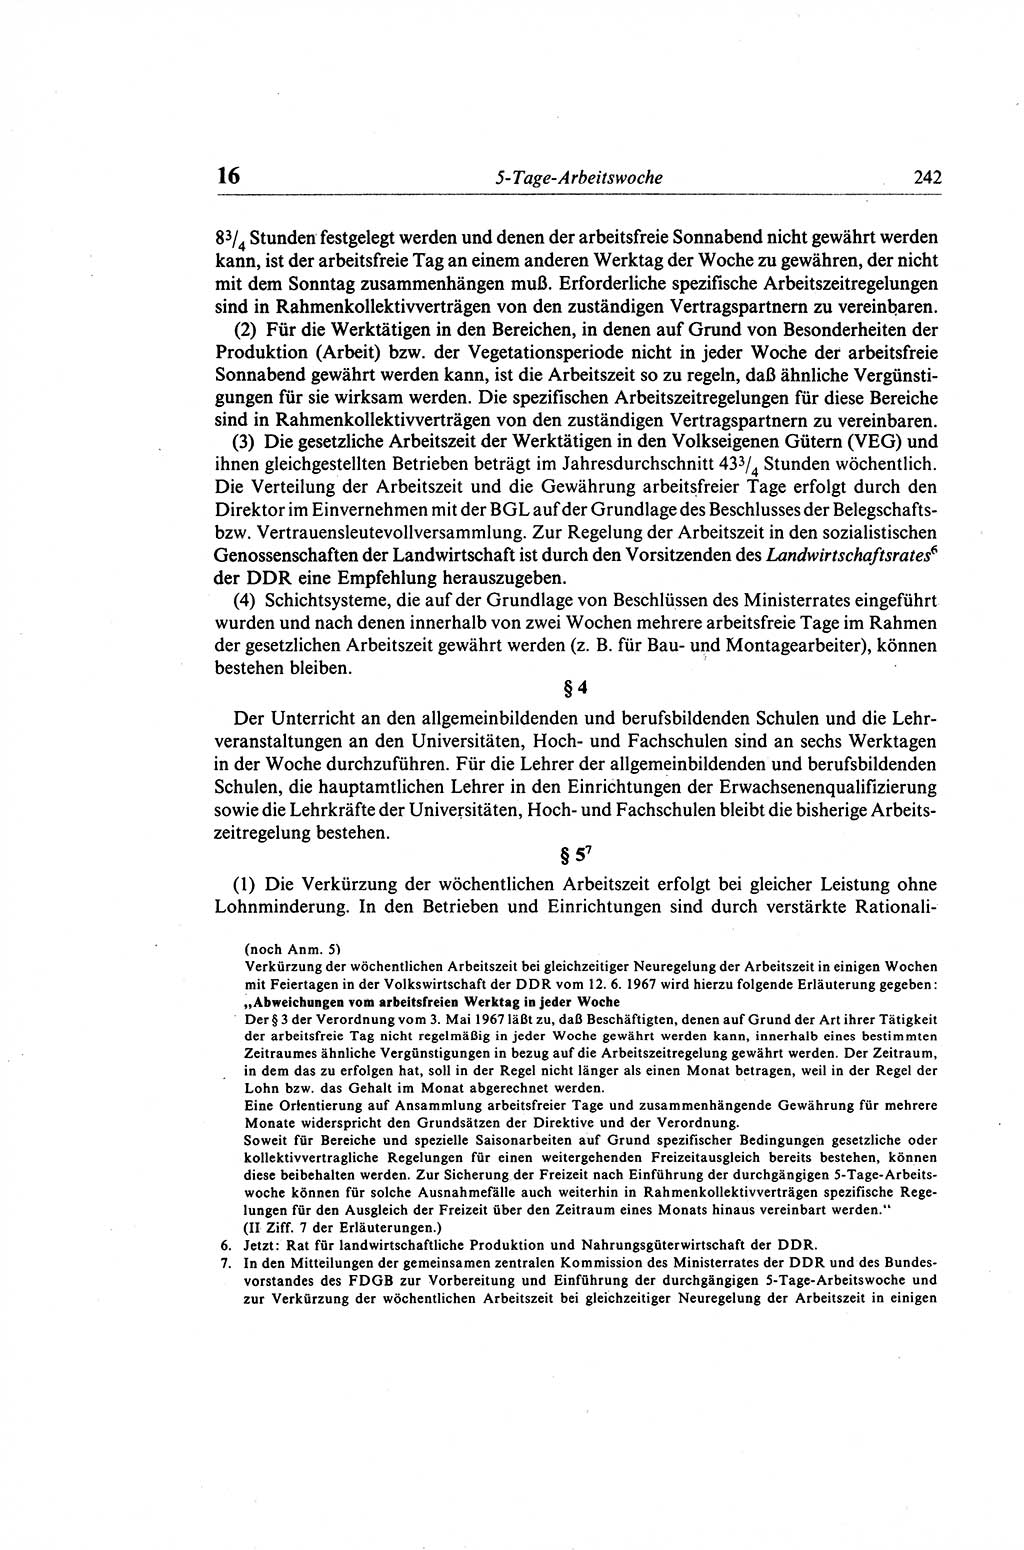 Gesetzbuch der Arbeit (GBA) und andere ausgewählte rechtliche Bestimmungen [Deutsche Demokratische Republik (DDR)] 1968, Seite 242 (GBA DDR 1968, S. 242)